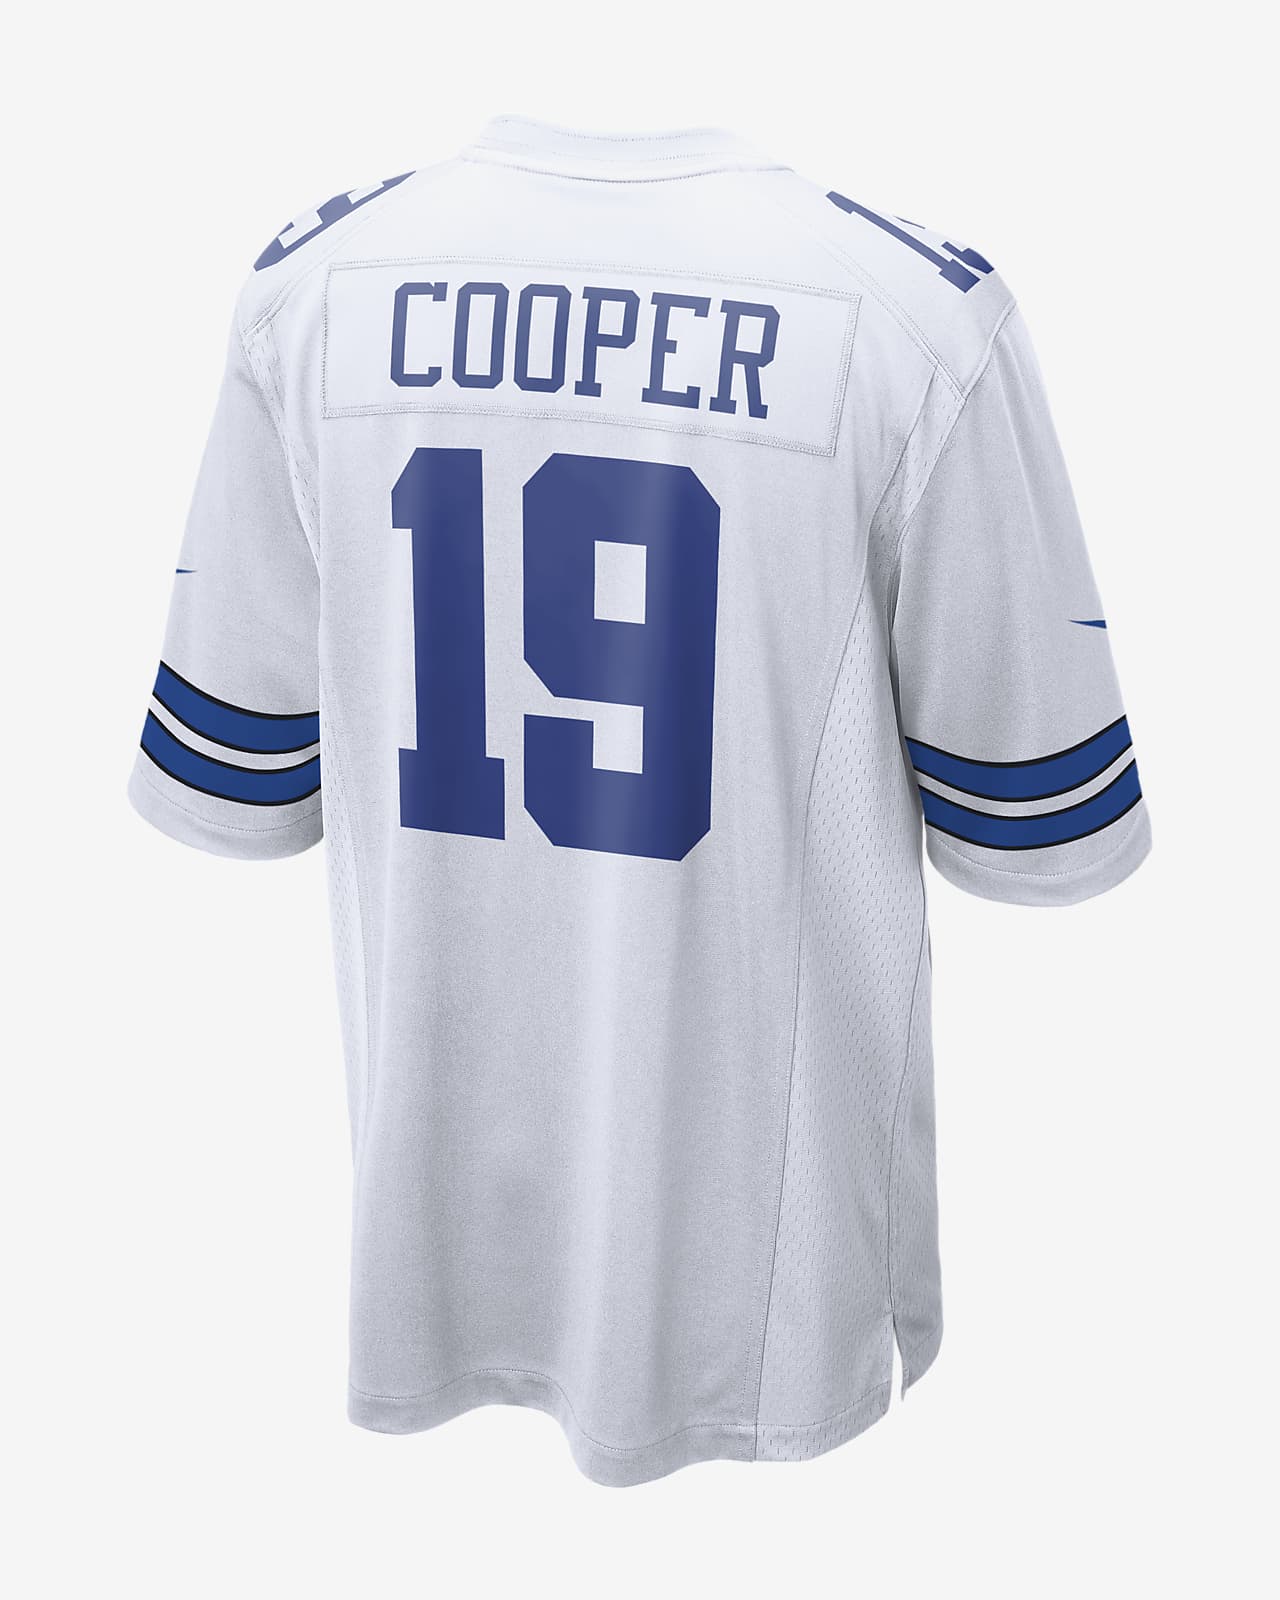 NFL Dallas Cowboys (Amari Cooper) Men's Game Football Jersey